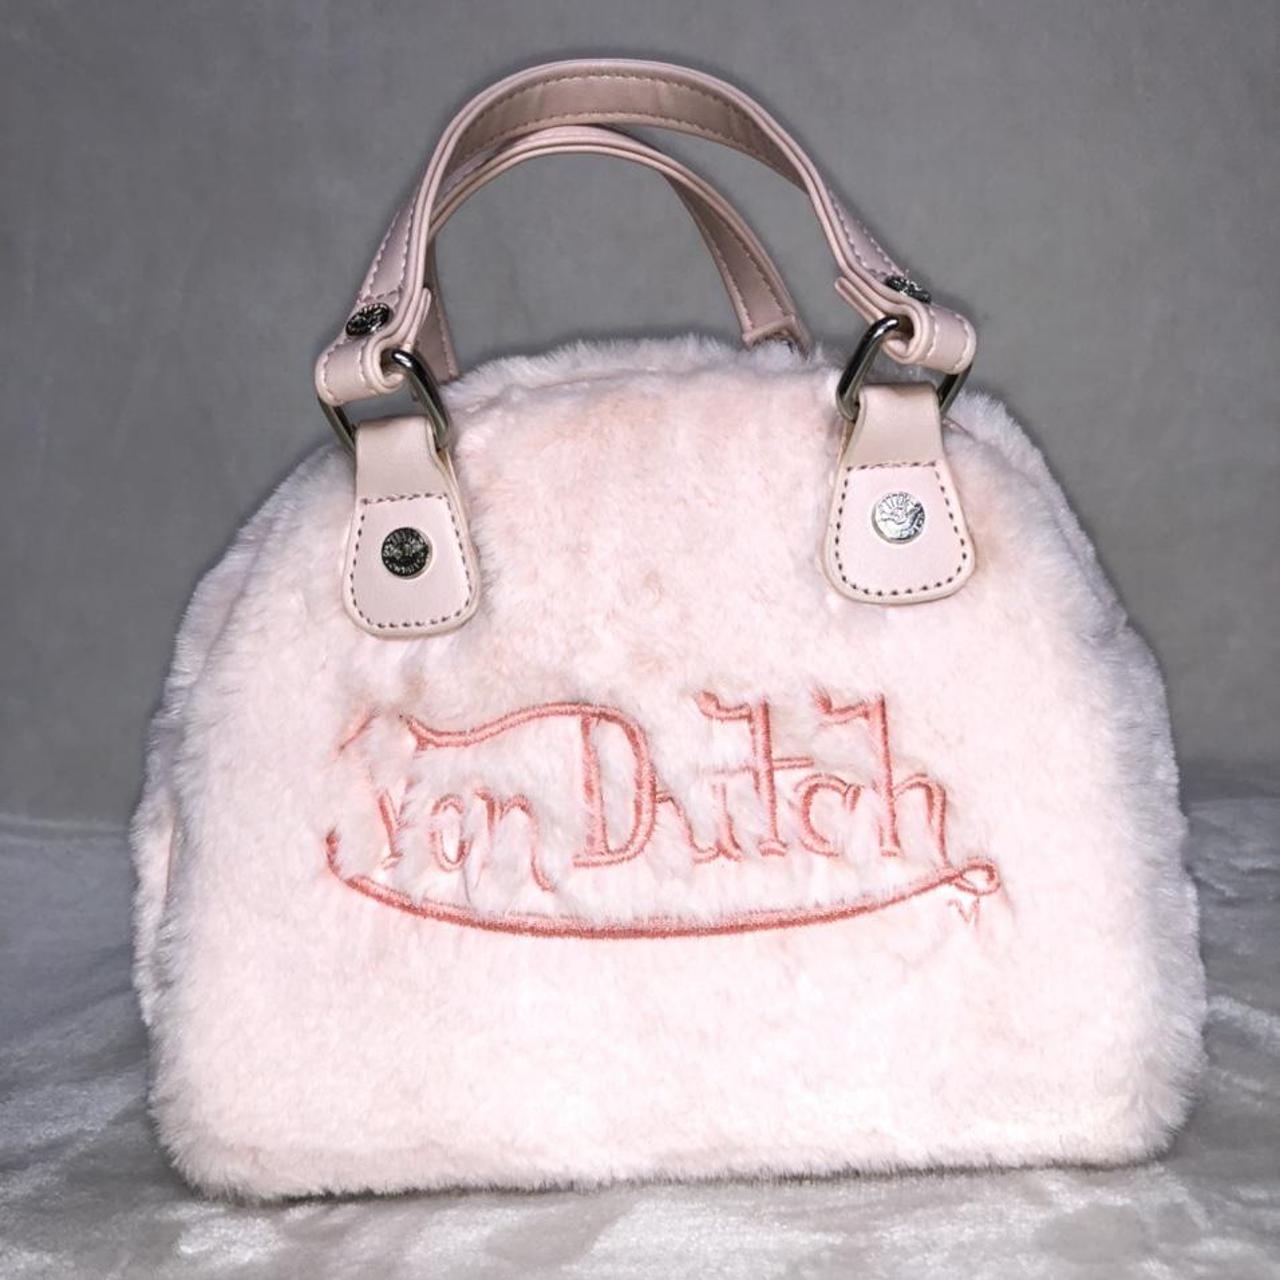 Von Dutch Paris Pony Hair Bowling Bag